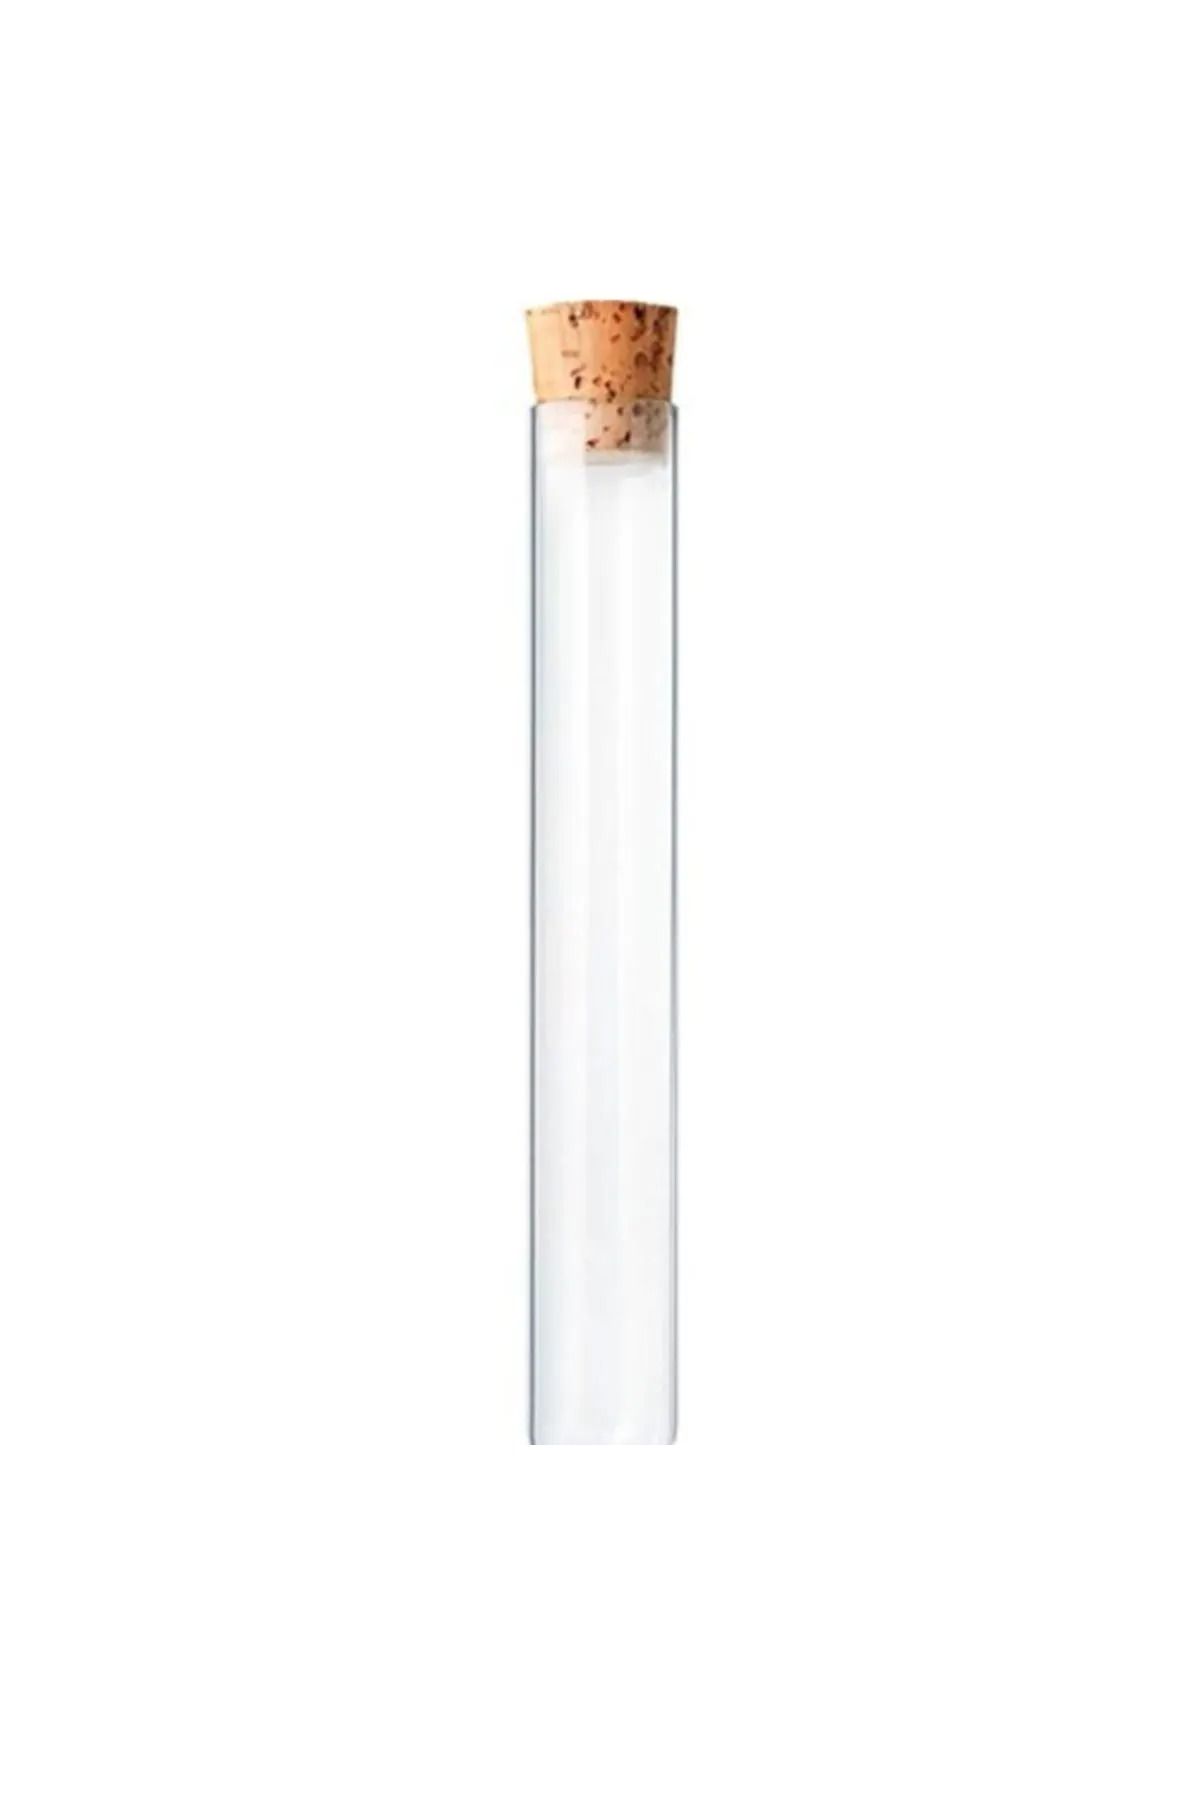 DODOPAZAR Mantar Tıpalı Dibi Düz Cam Şişe Deney Tüpü Şişe Boyu 7.5cm Şişe Ağzı 1cm 100 Adet